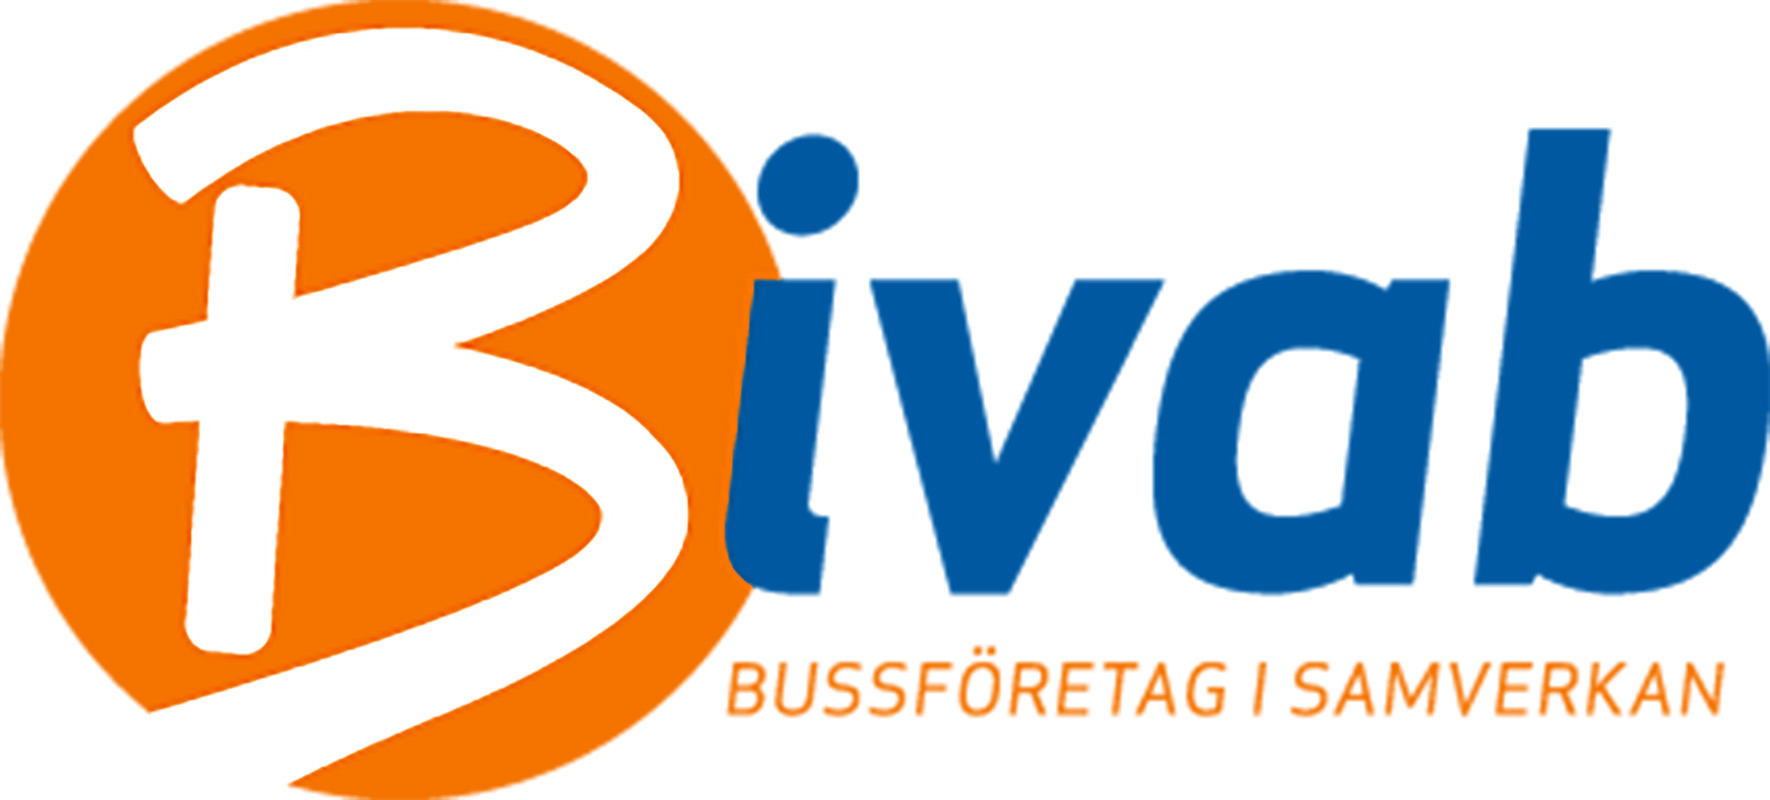 Bivab Bussföretag i samverkan